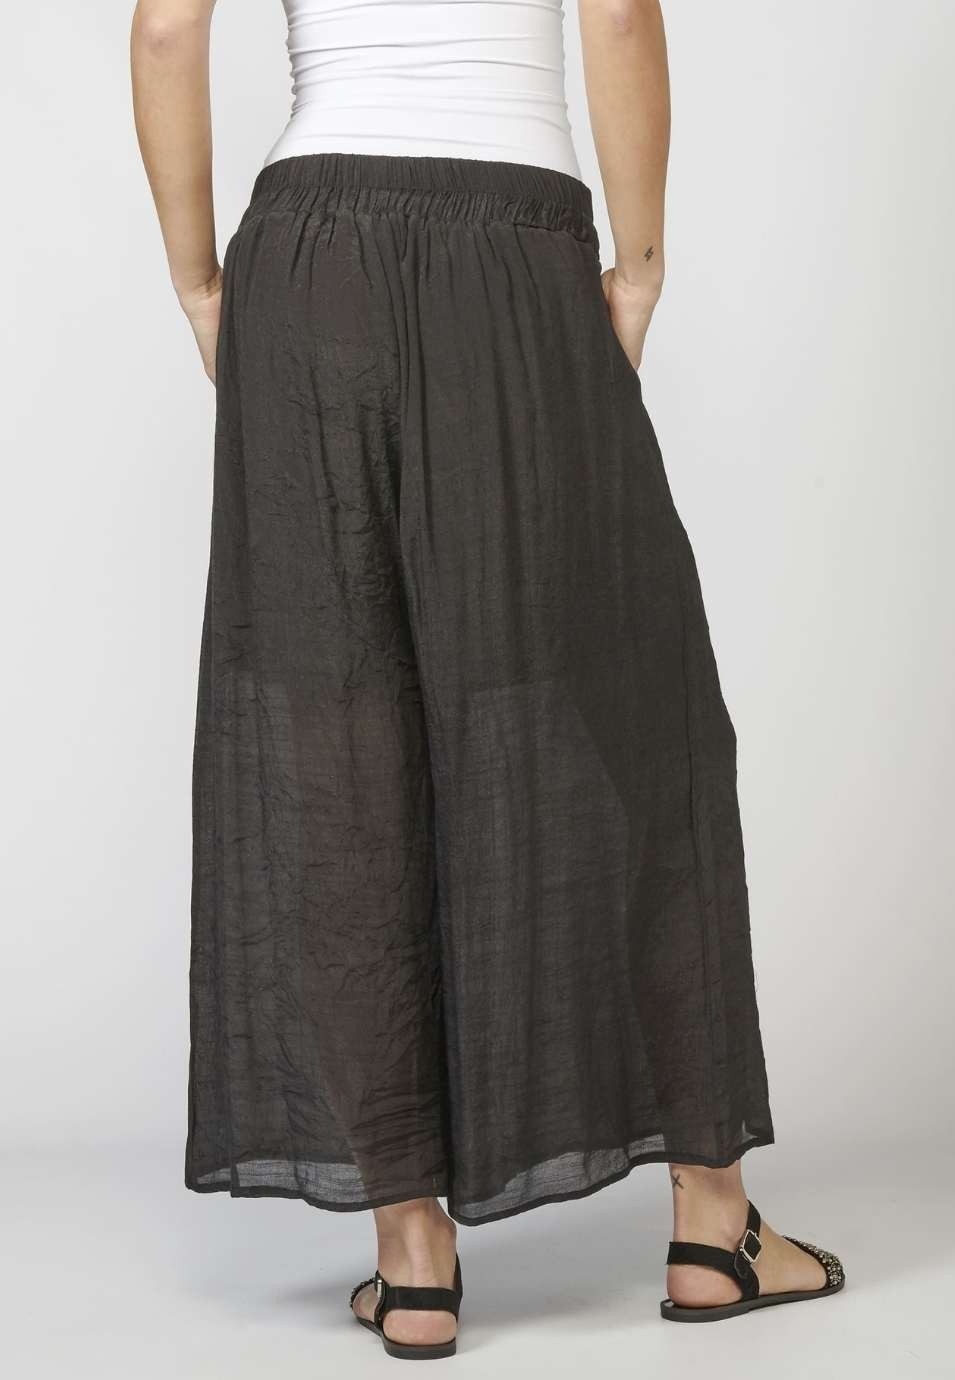 Pantalón de Mujer straigth largo elástico con fajín y Detalle Bordado Étnico color Negro 2